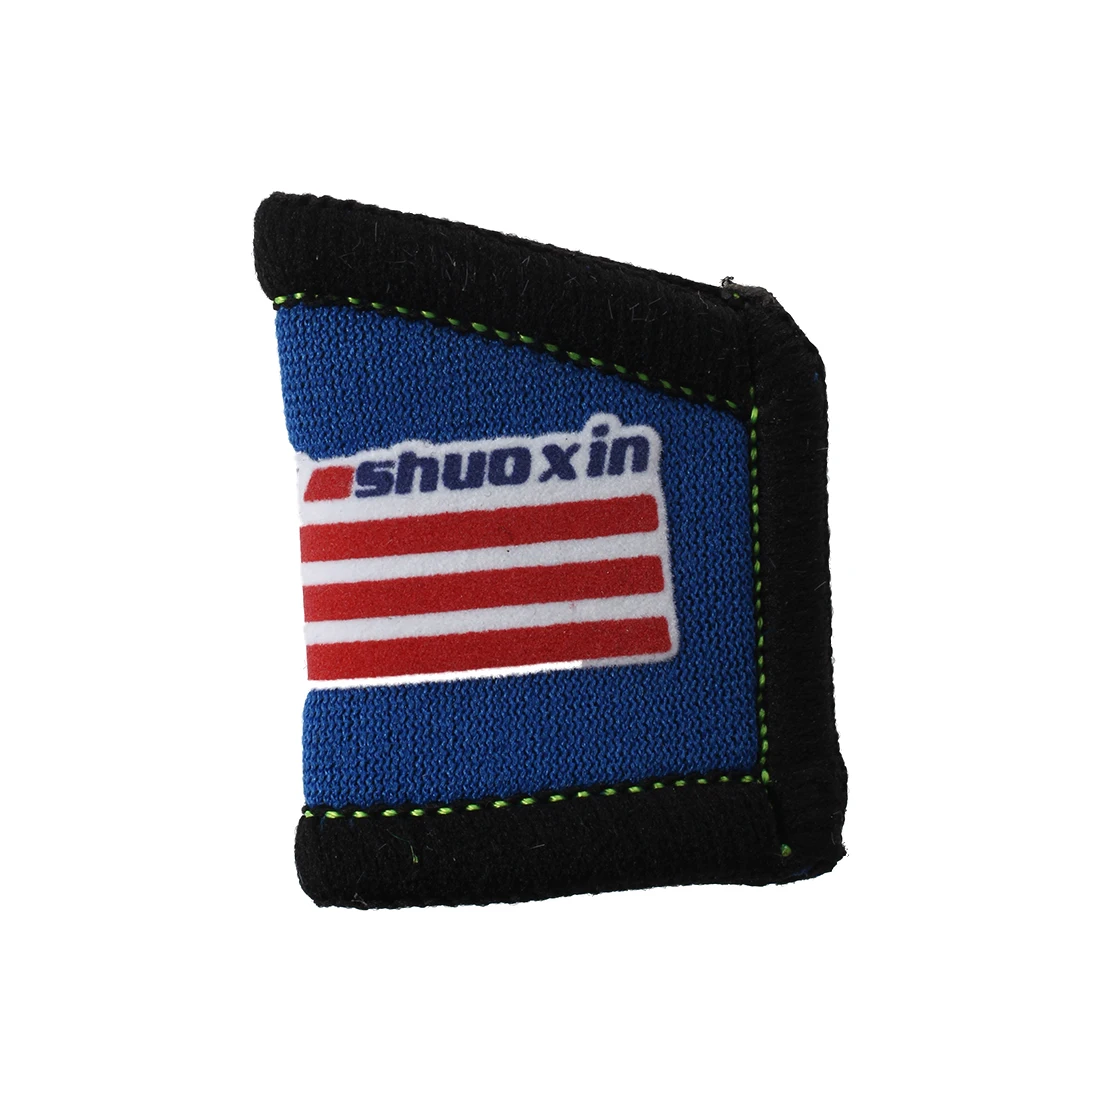 Shuoxin SX500 защита пальцев для волейбольной корзины